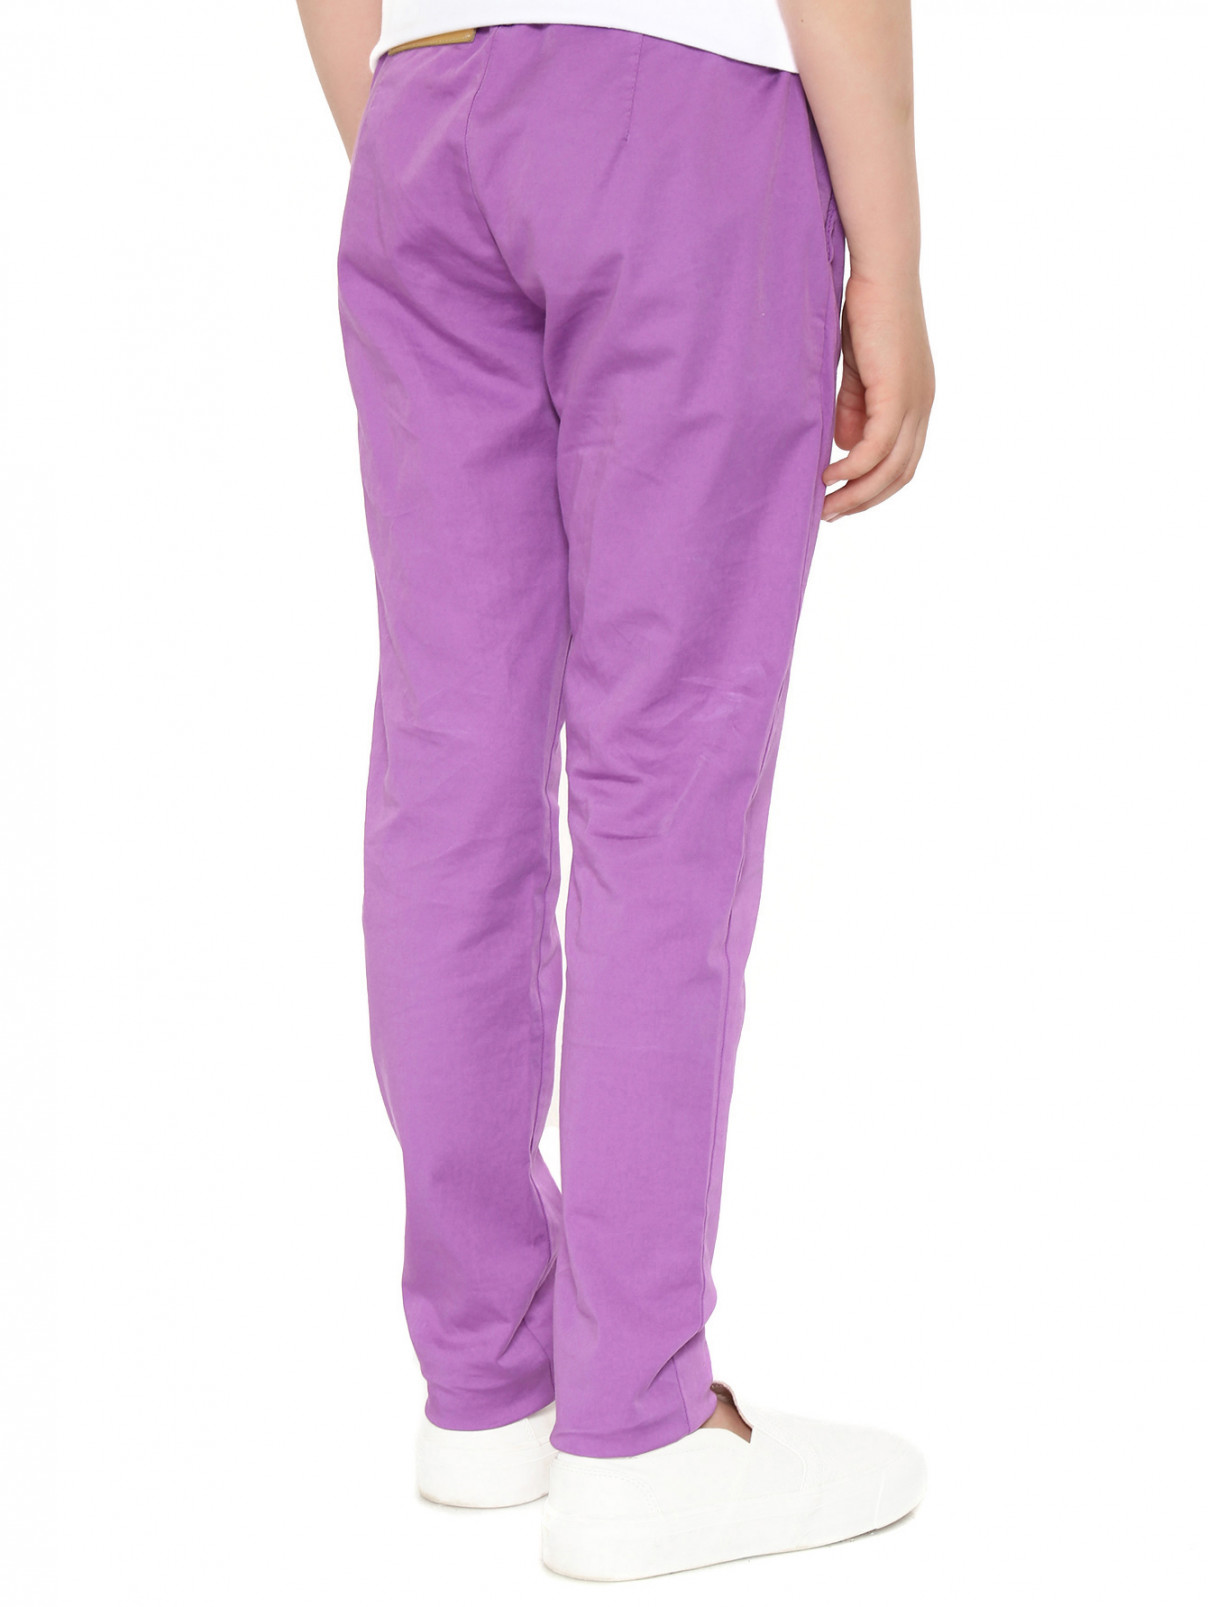 Зауженные брюки из хлопка Moschino  –  Модель Верх-Низ1  – Цвет:  Фиолетовый